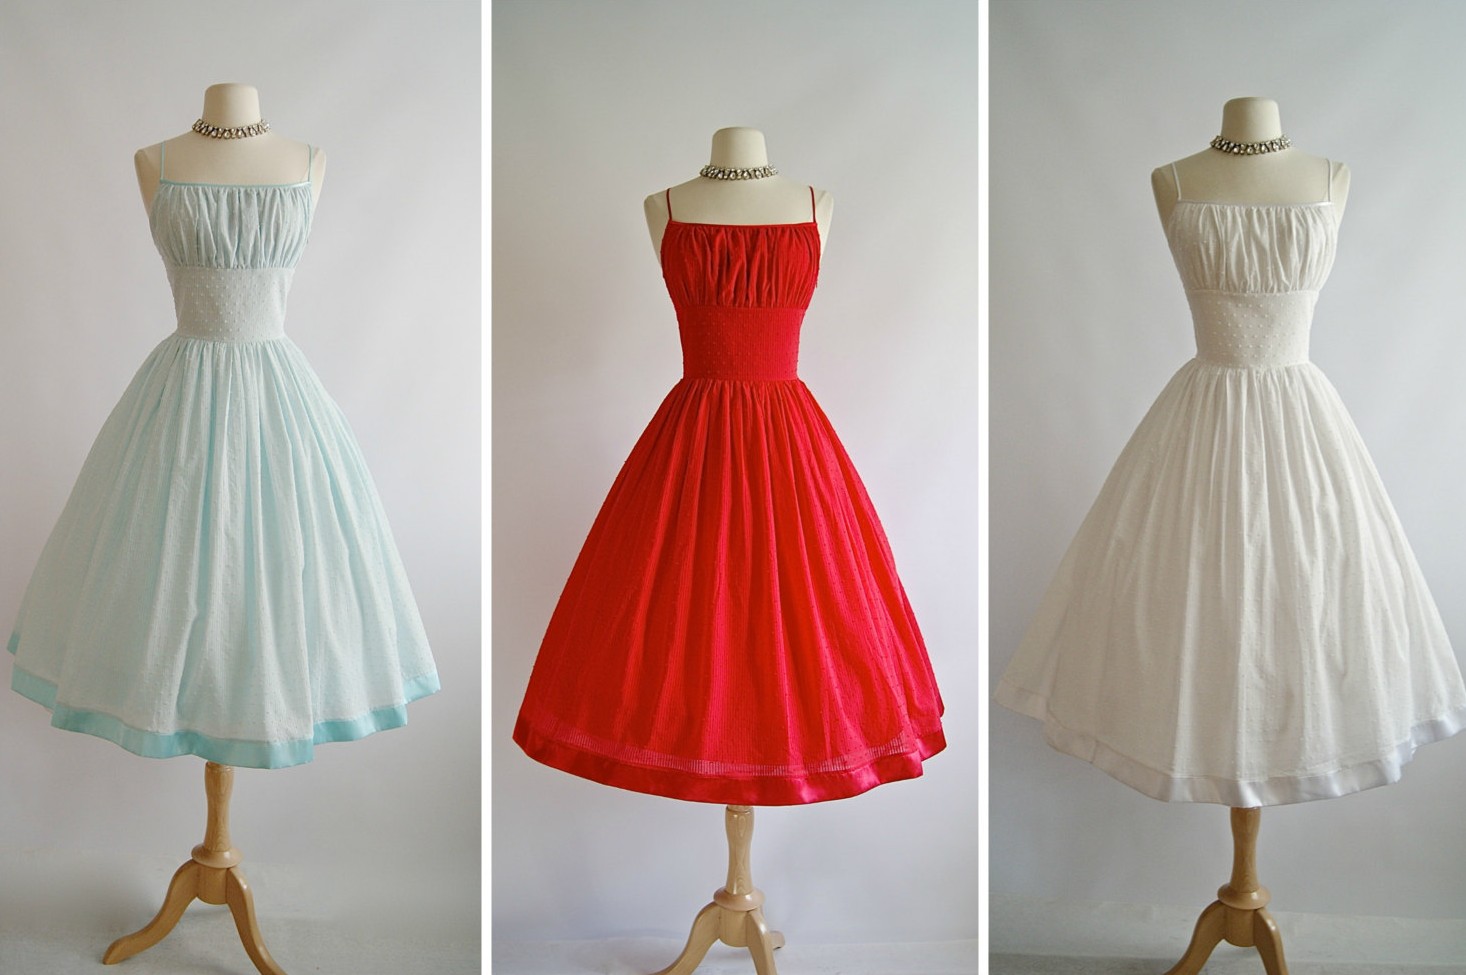 Classic Elegant 1950s Inspired Bridesmaid Dresses